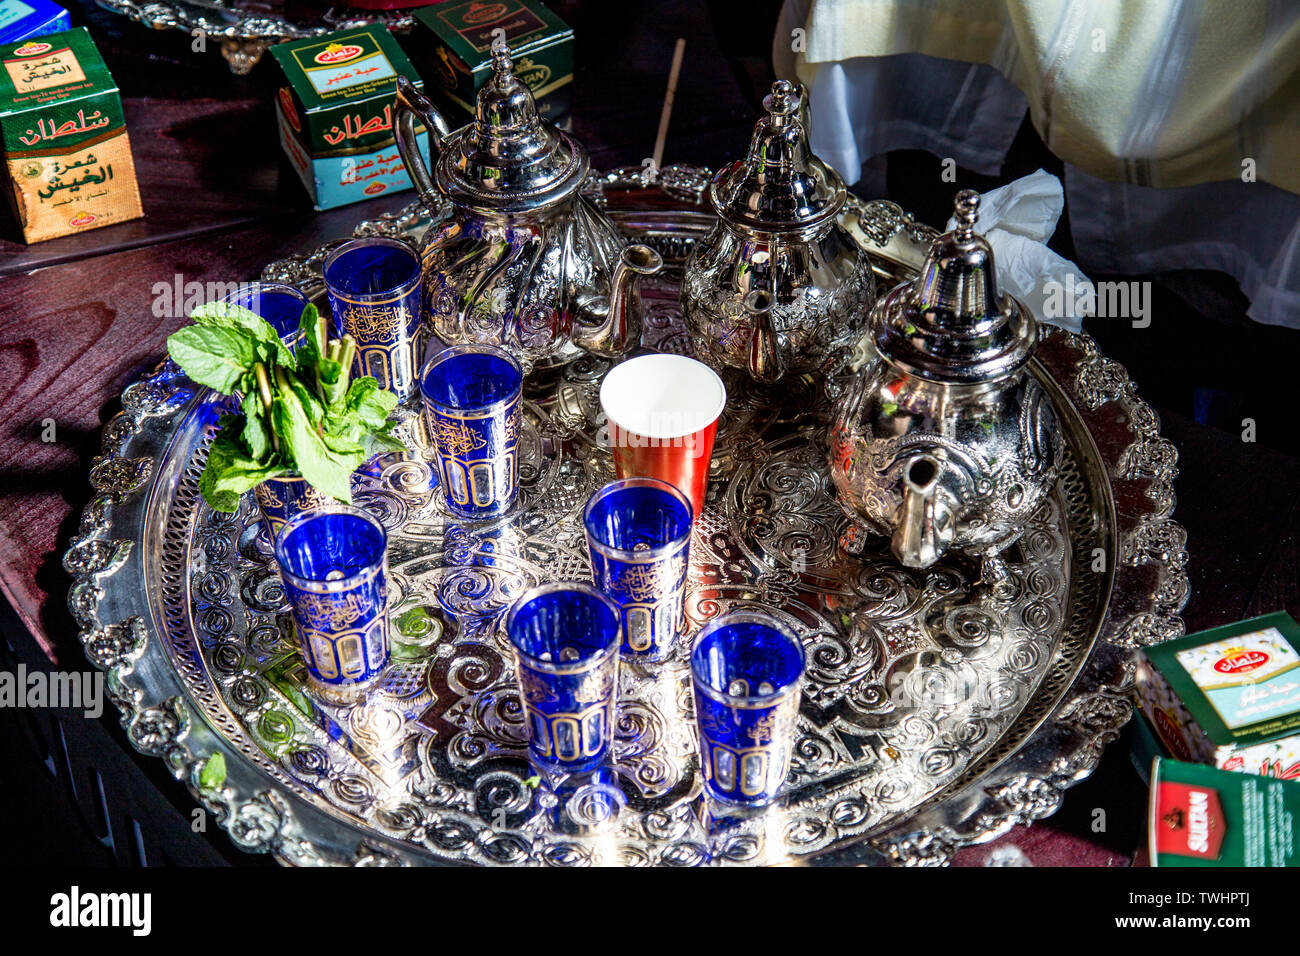 De l'argenterie traditionnelle utilisée pour le thé à la menthe marocain, des pots, des verres et du bac, FesTeaVal 2019 Tabac au Dock, London, UK Banque D'Images